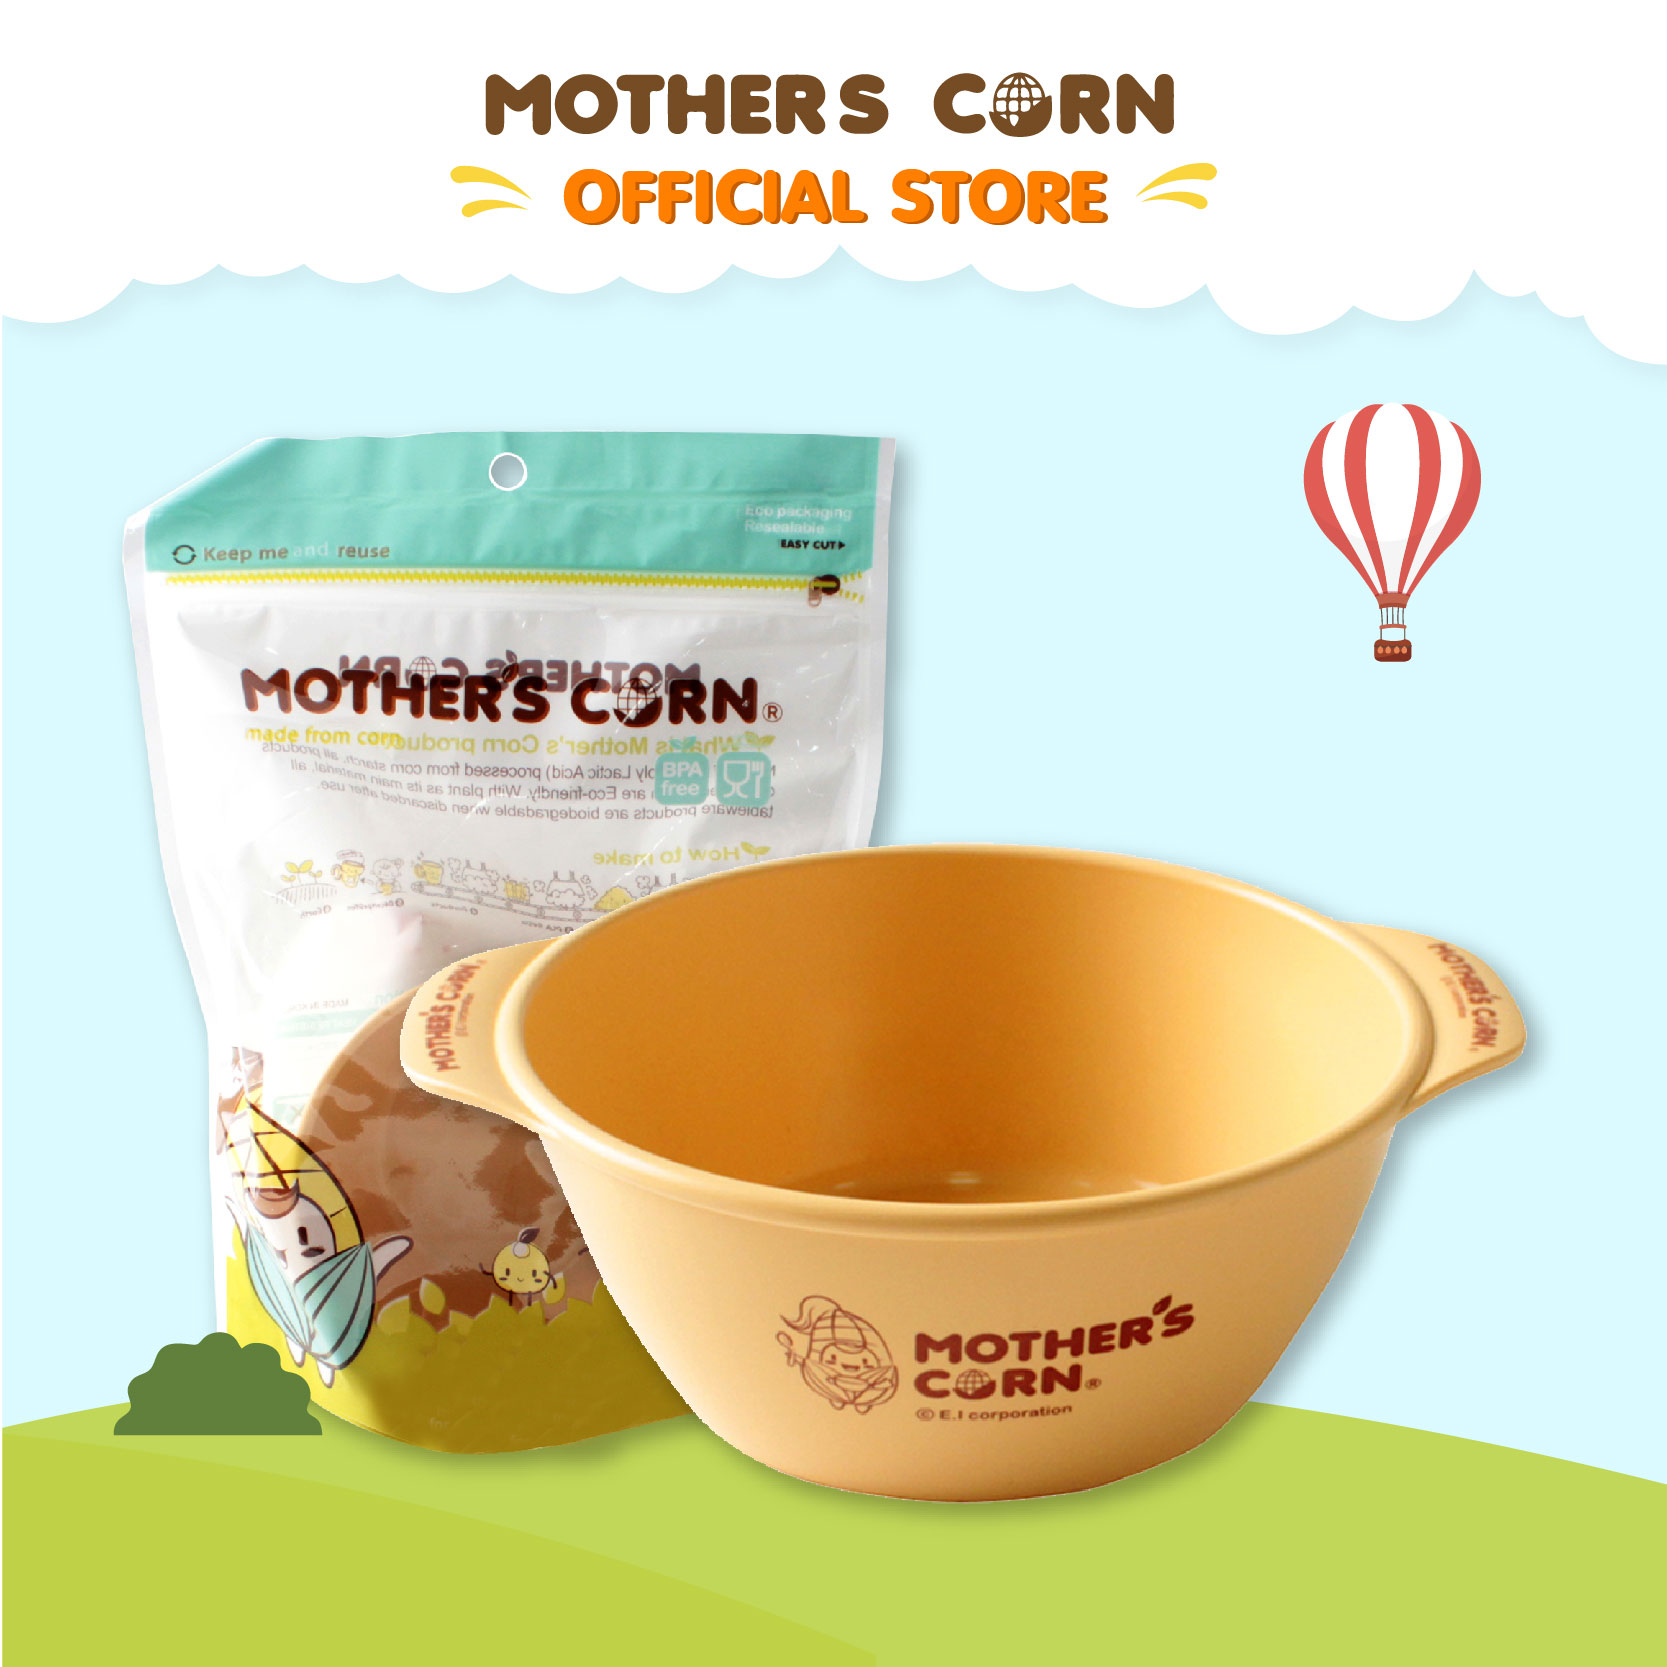 ซื้อที่ไหน Mother's Corn New Soup Bowl มาเธอร์คอน ถ้วยใส่อาหารสำหรับเด็กโต